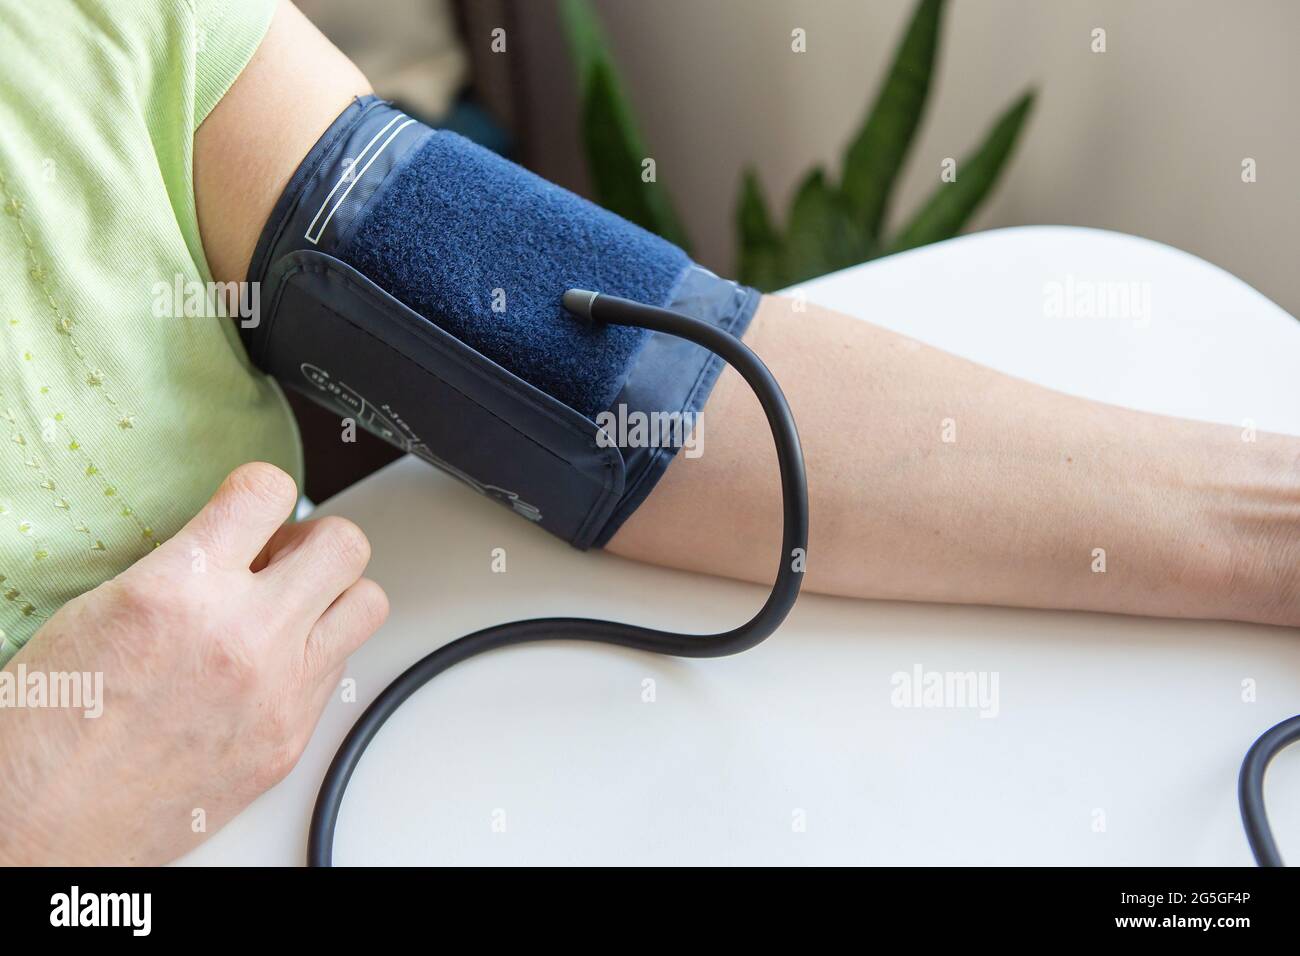 Messung des Blutdrucks. Ein Gerät zur Blutdruckmessung an der Hand einer  Frau Stockfotografie - Alamy